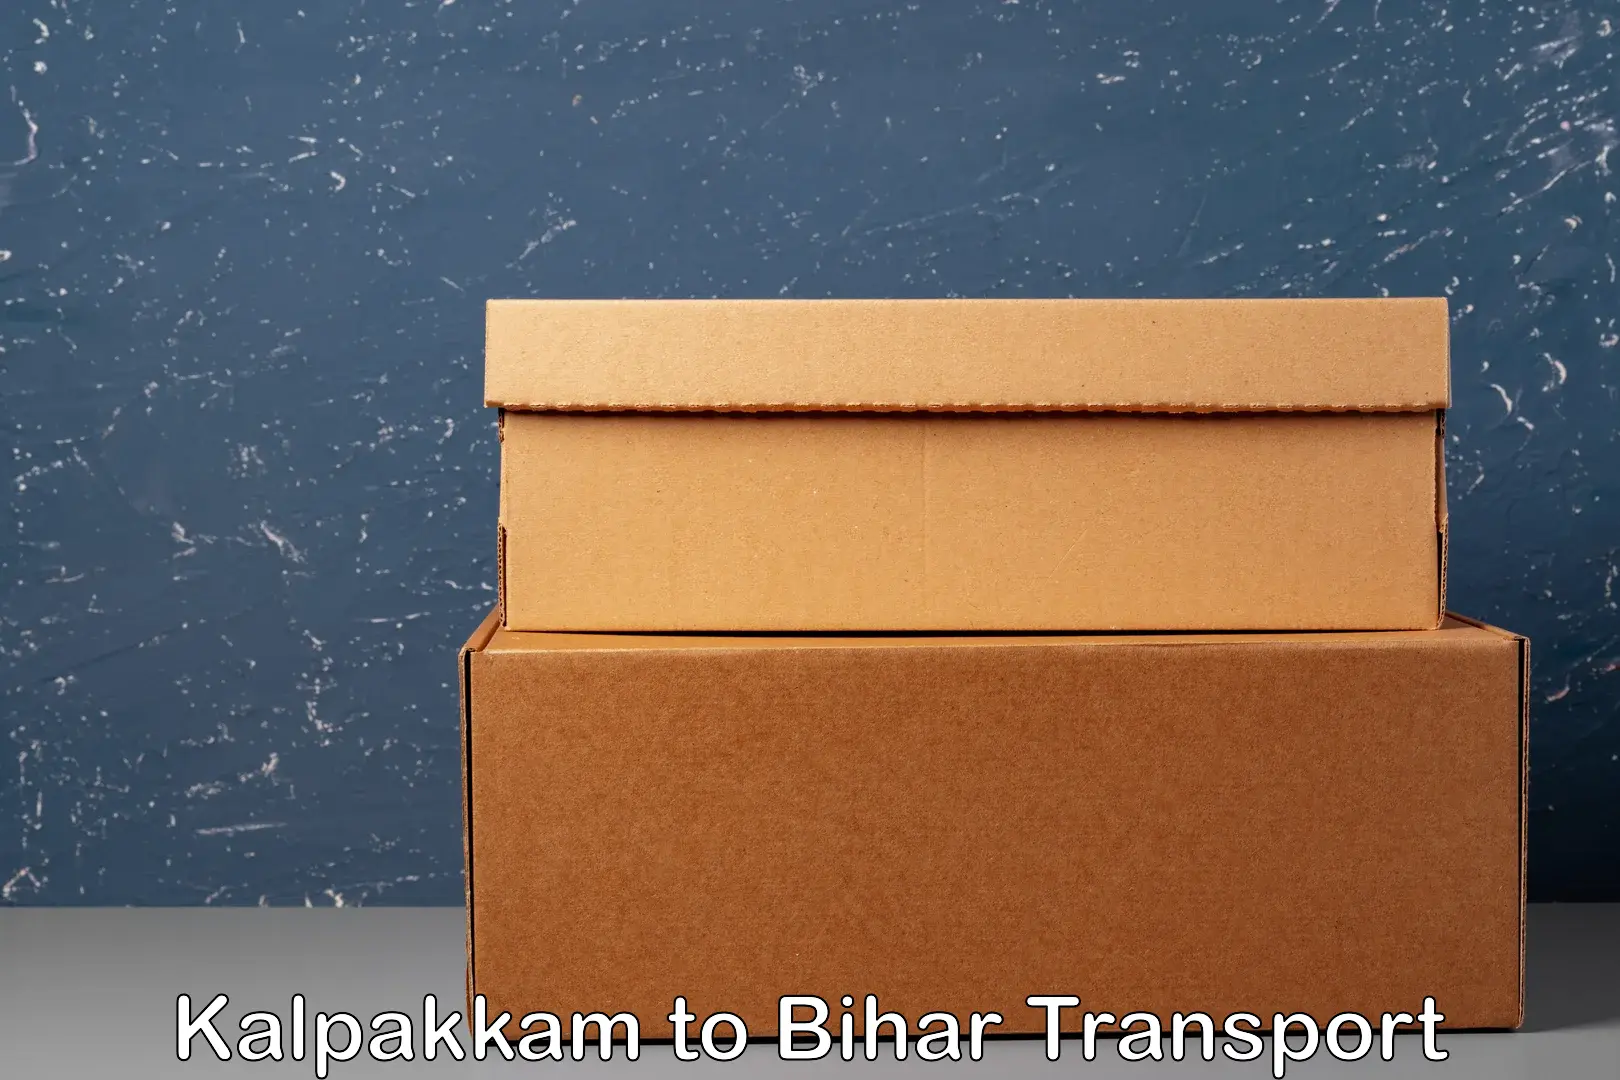 Road transport online services in Kalpakkam to Bikramganj